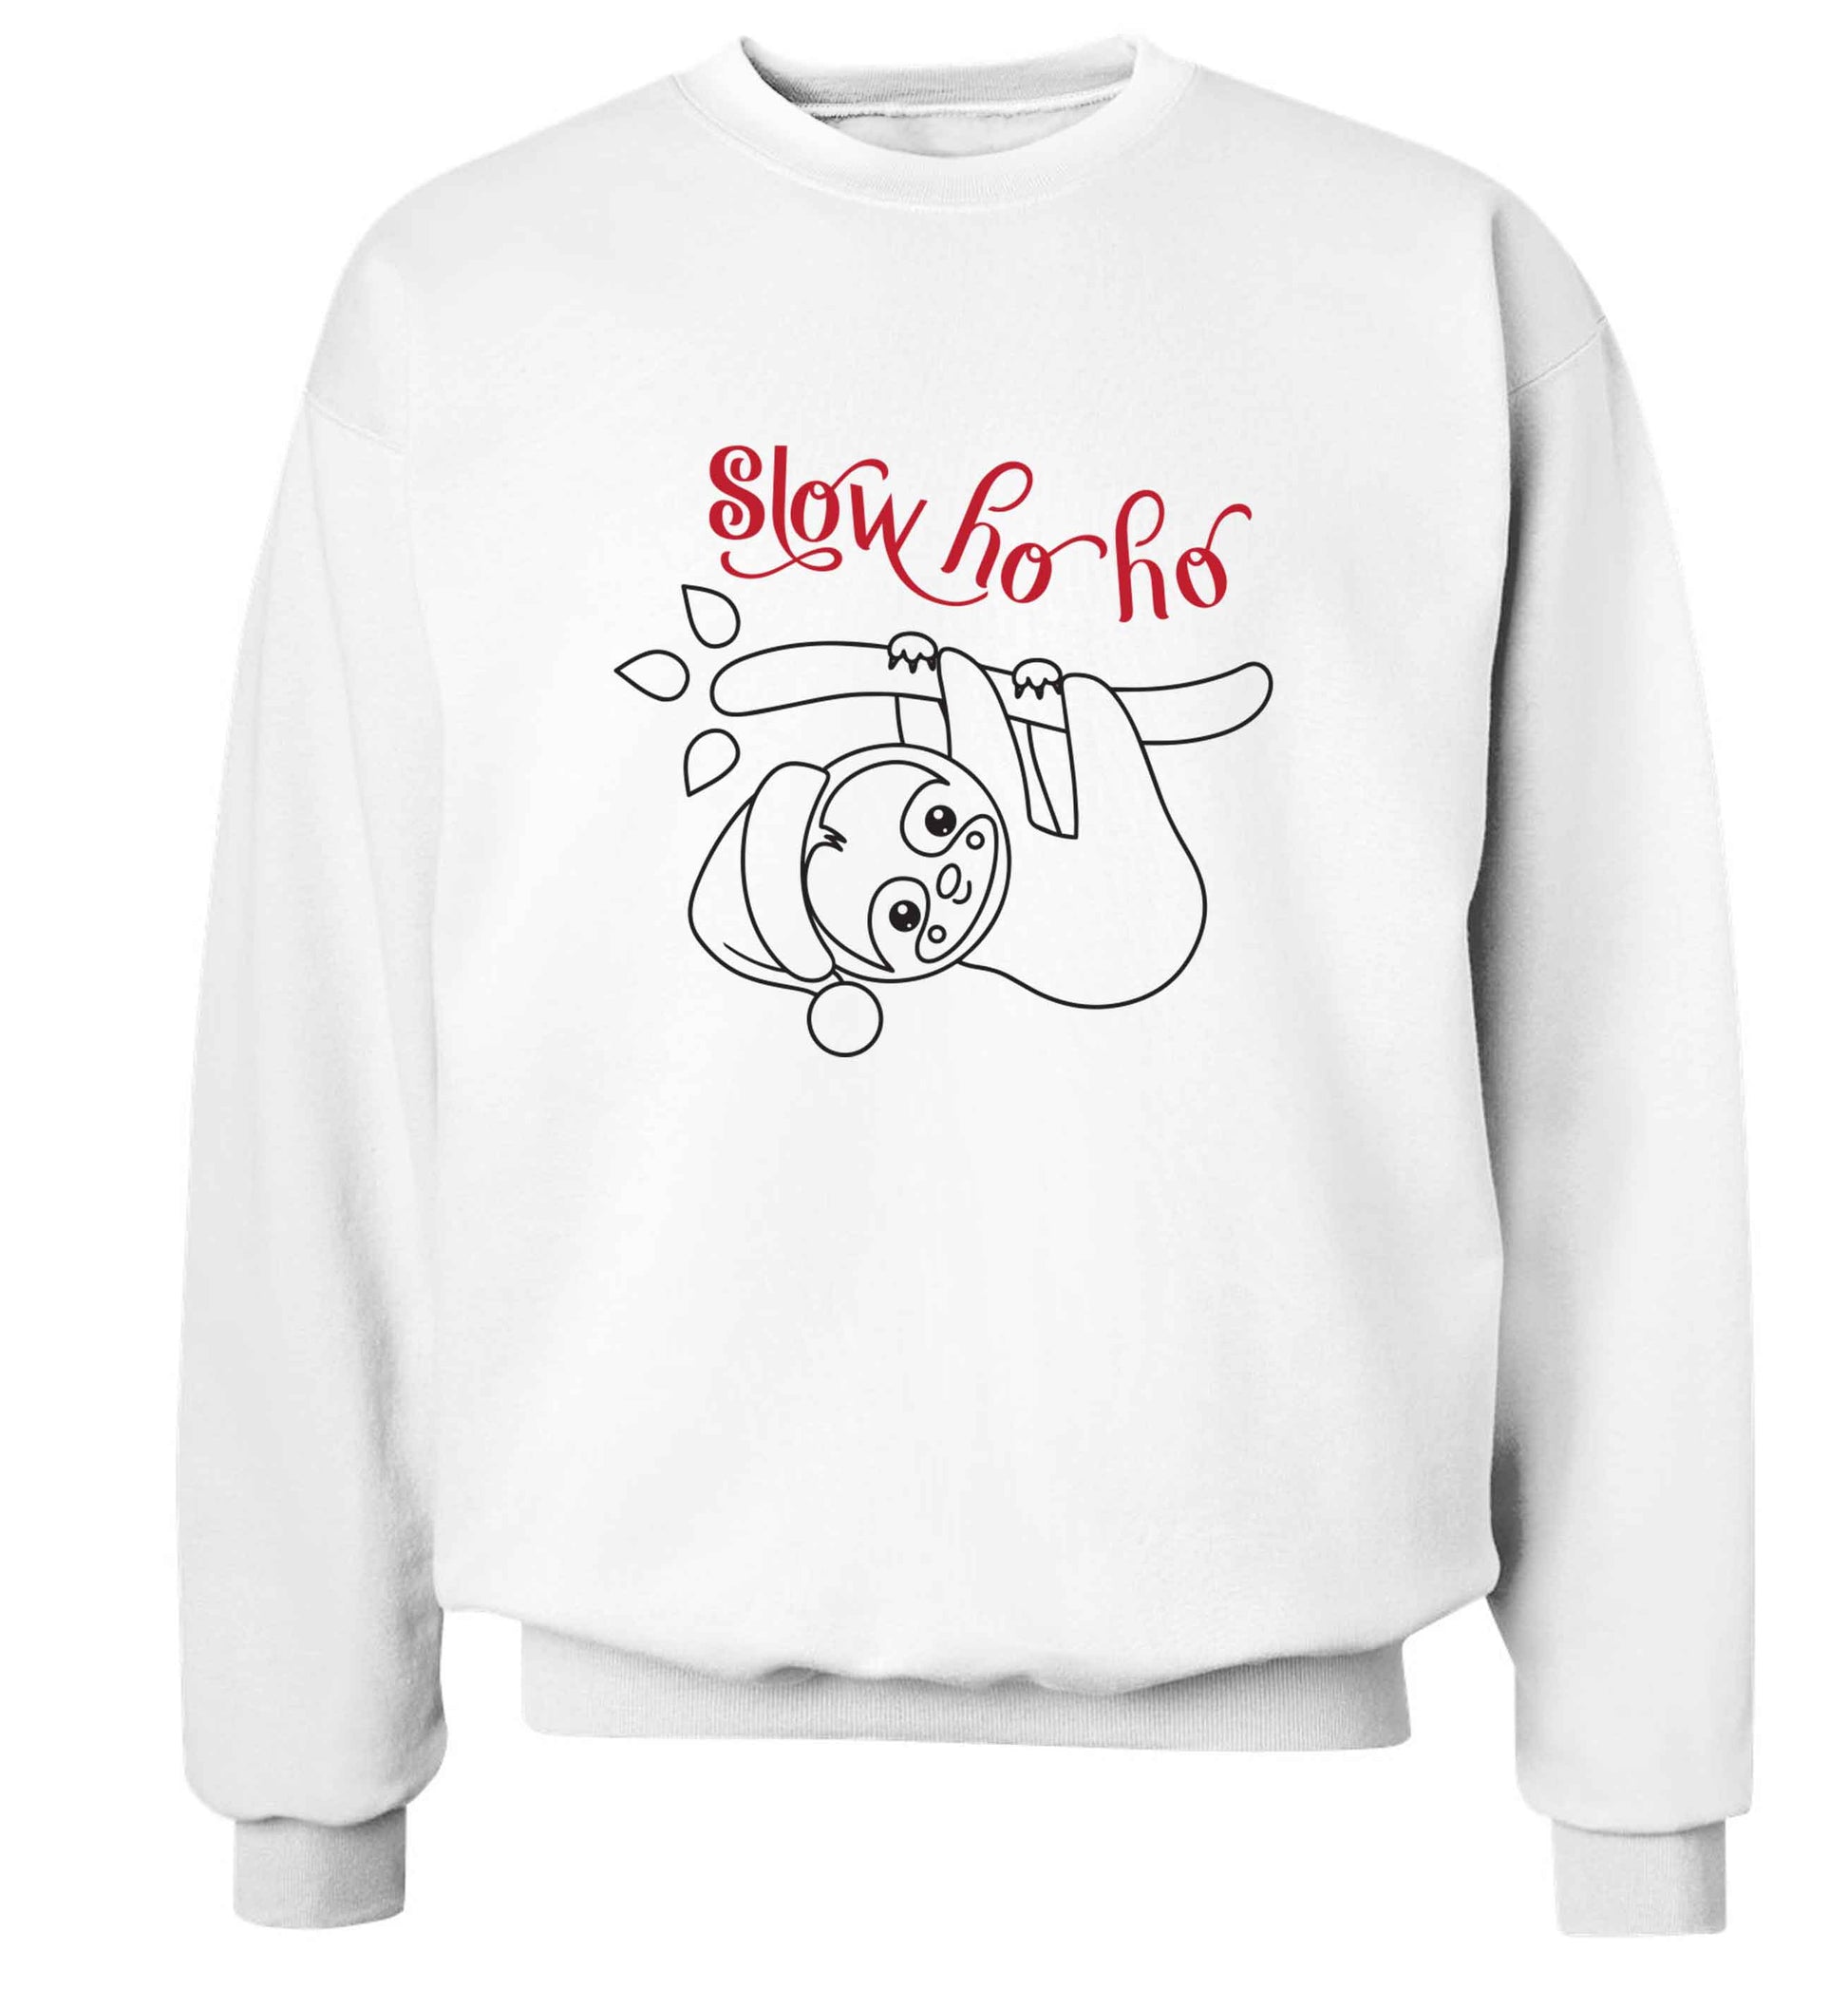 Slow Ho Ho adult's unisex white sweater 2XL